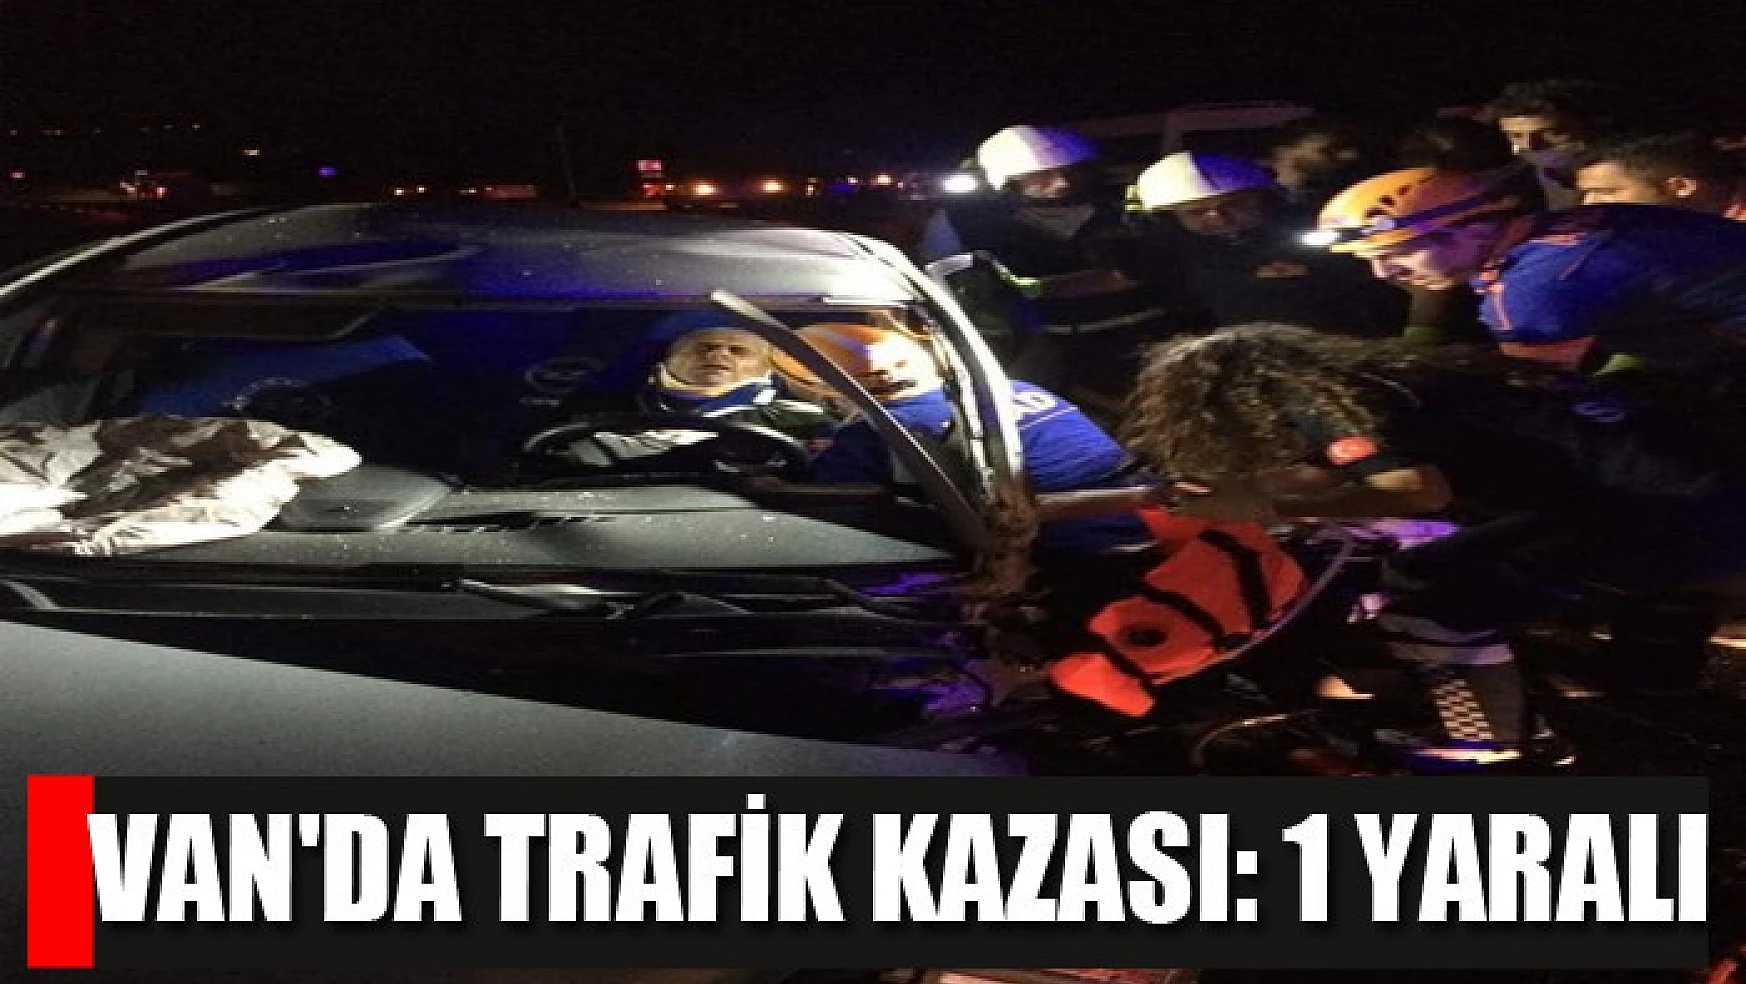 Van'da trafik kası: 1 yaralı